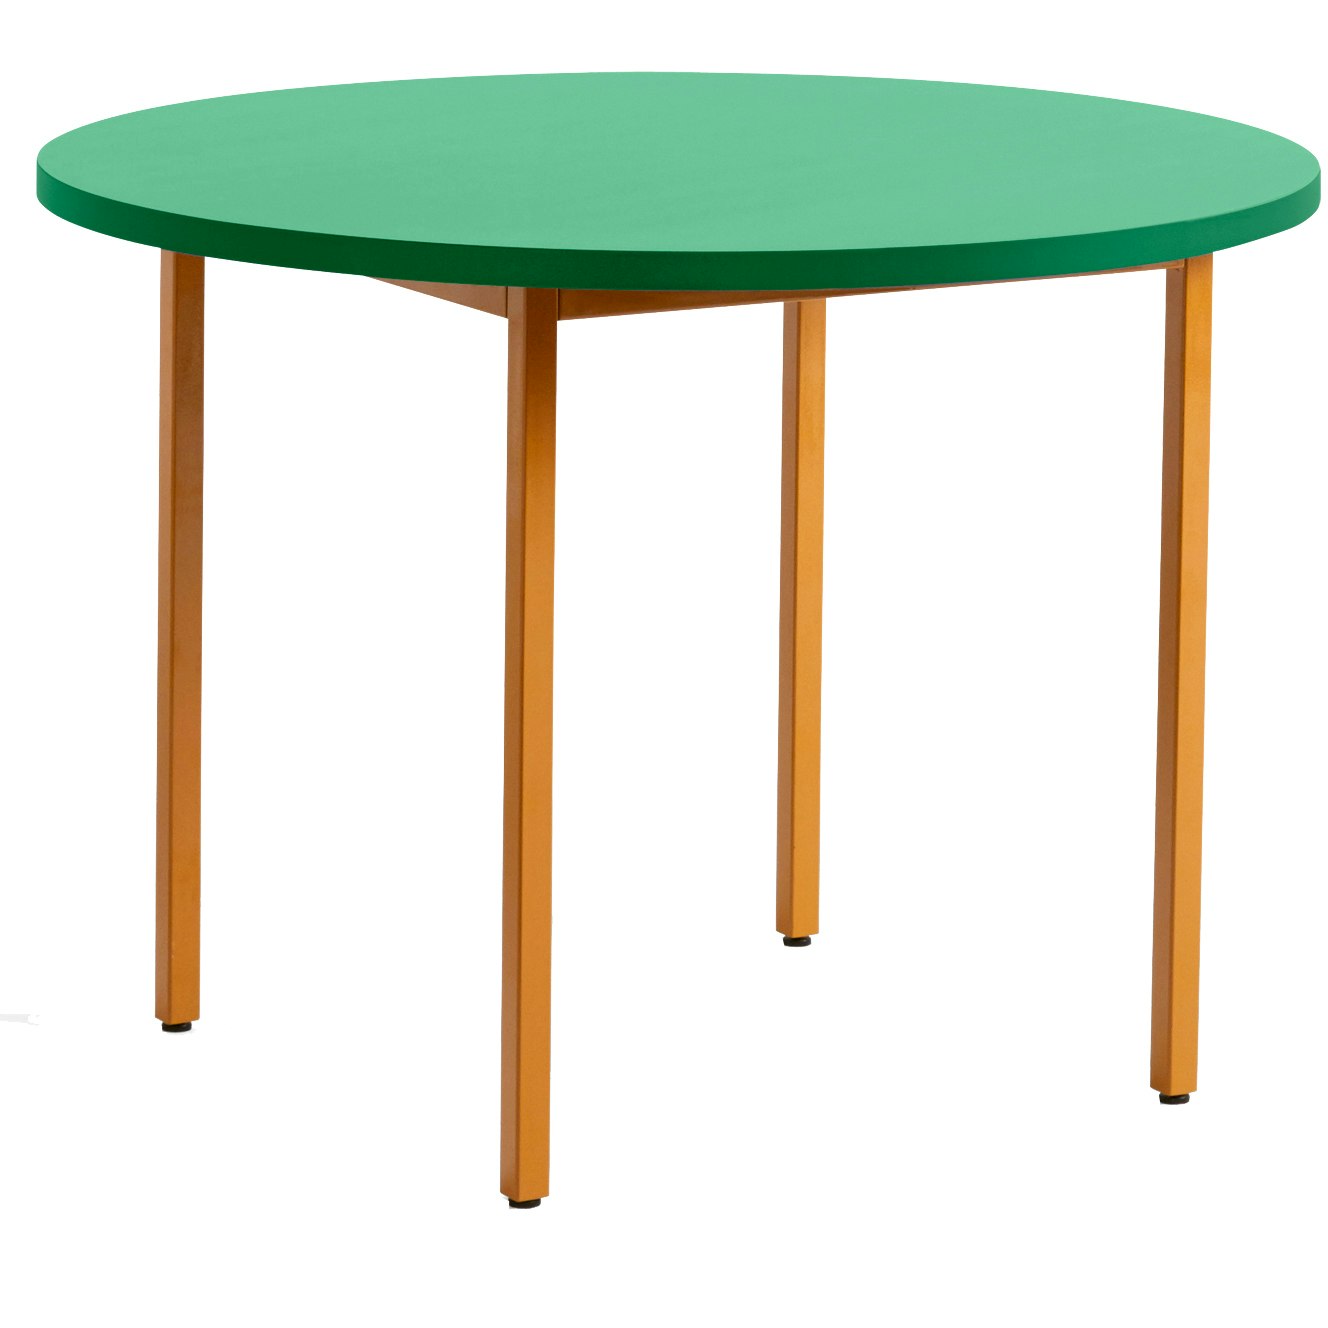 Two-Colour Tisch Ø105 cm, Ocker / Green Mint